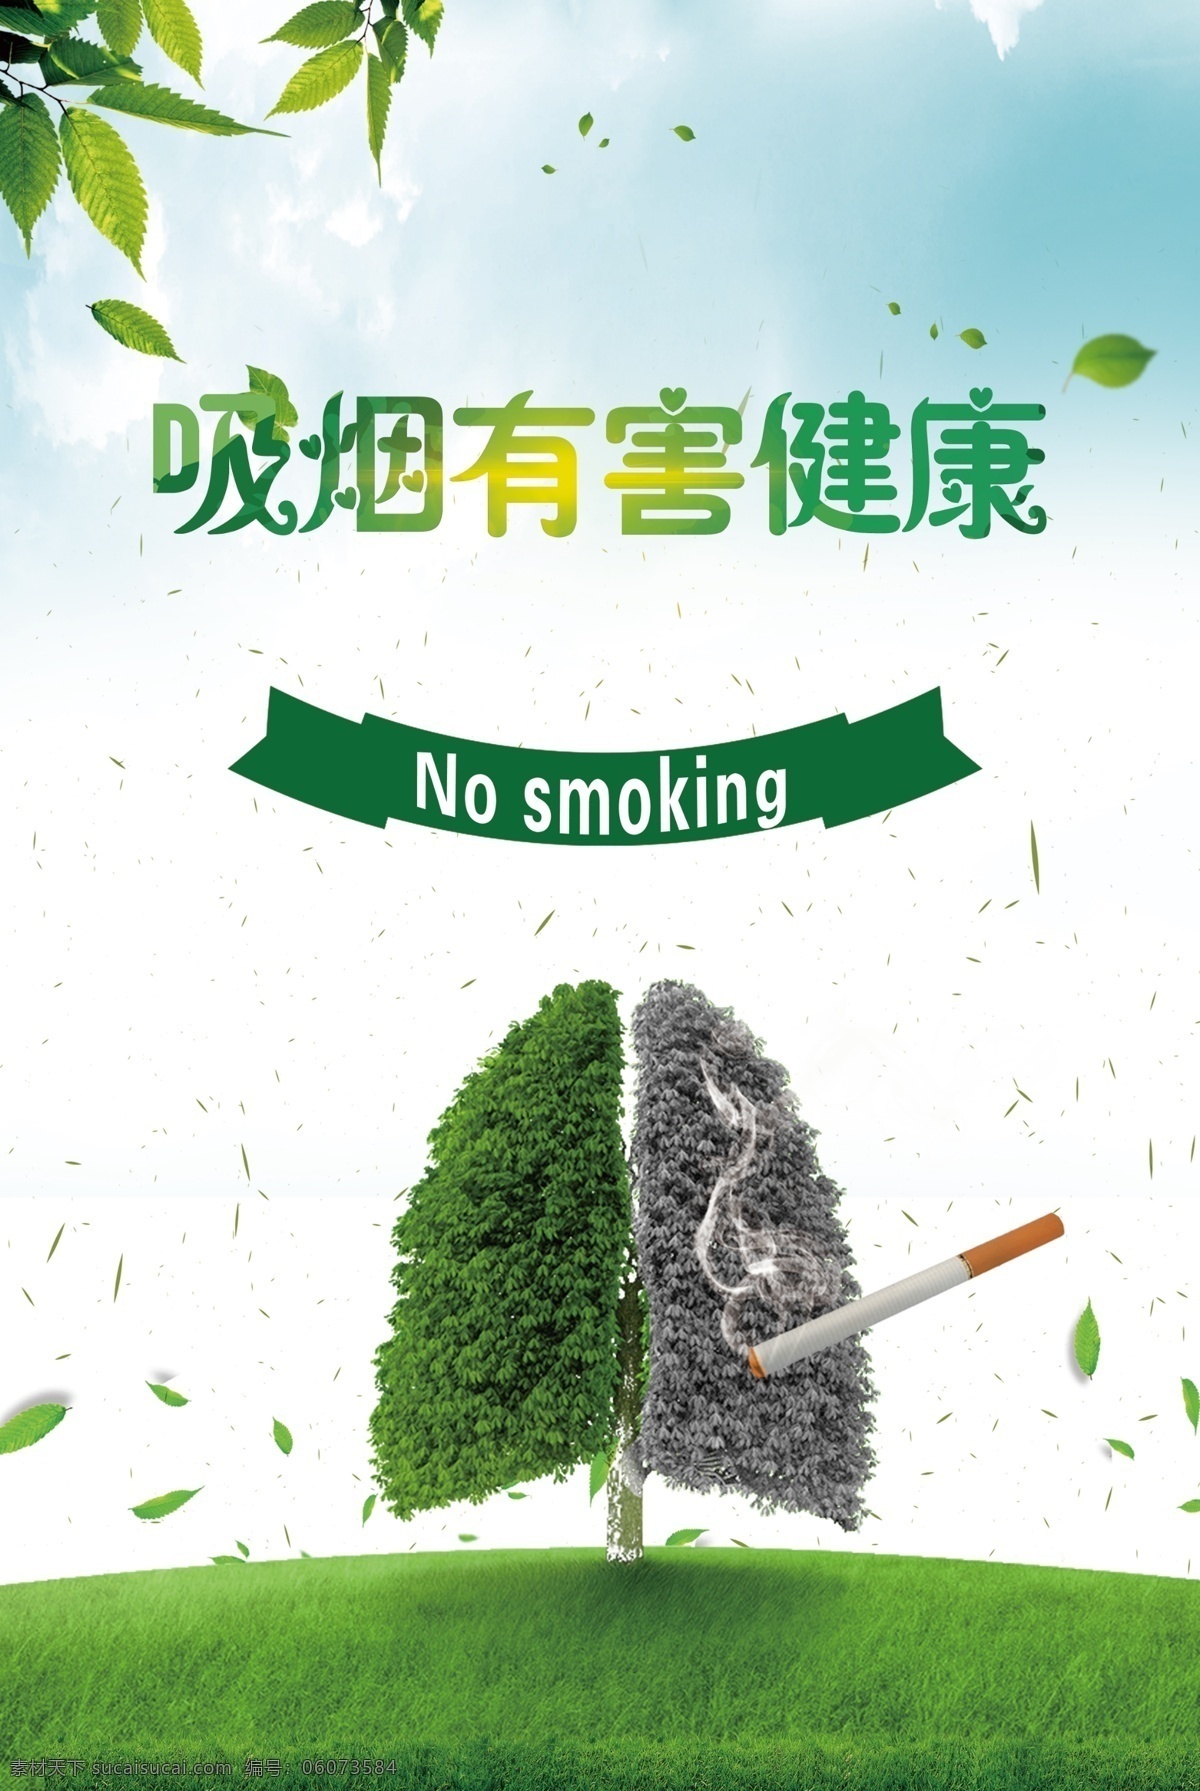 吸烟有害健康 绿色 大树 ps